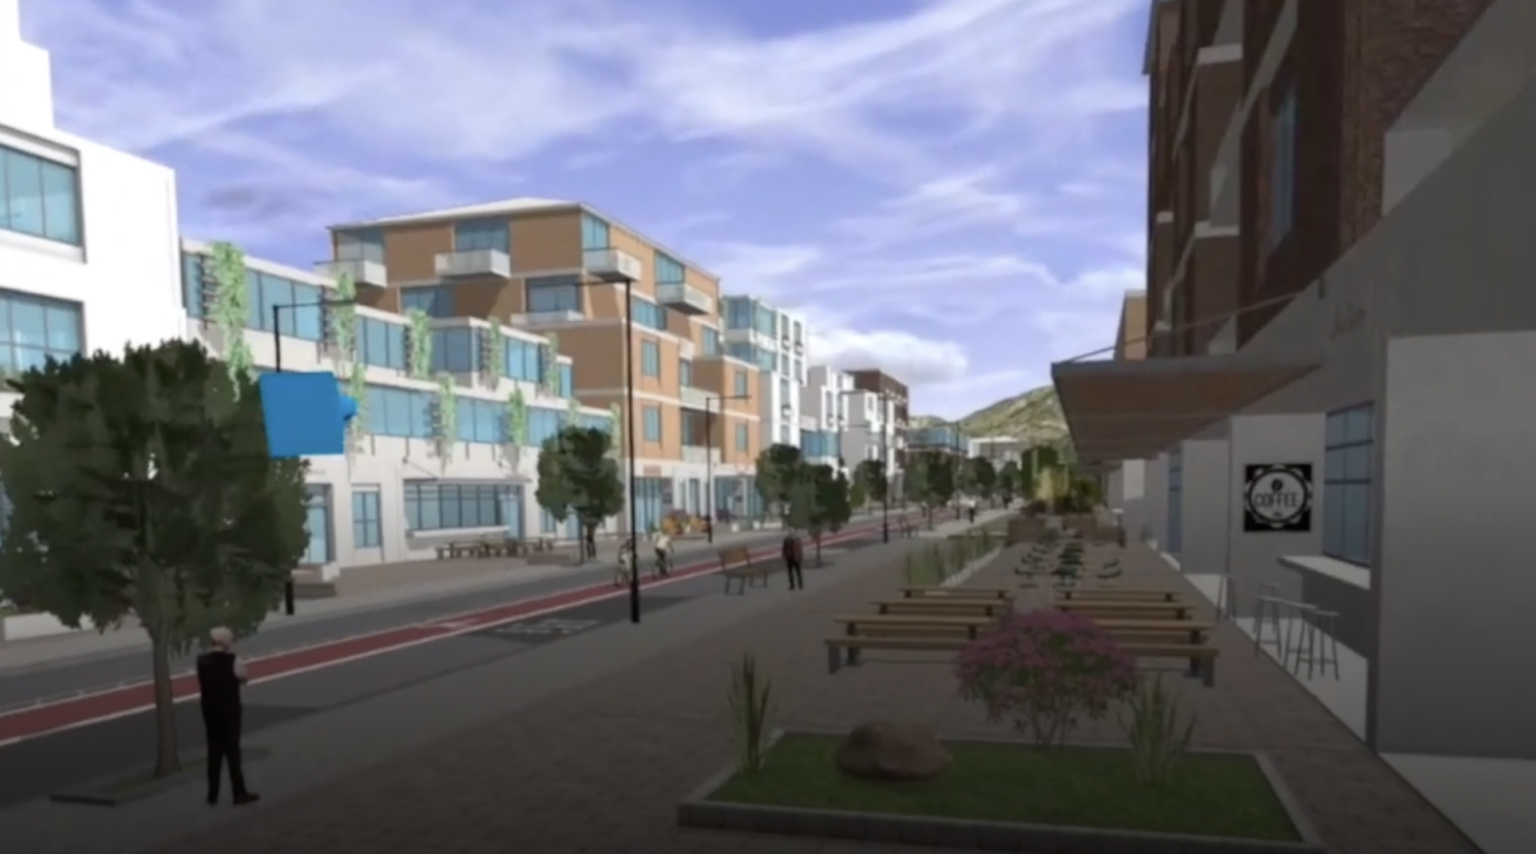 Cena 3D de um quarteirão da cidade com prédios, uma estrada e árvores verdes vistos por meio de um fone de ouvido VR